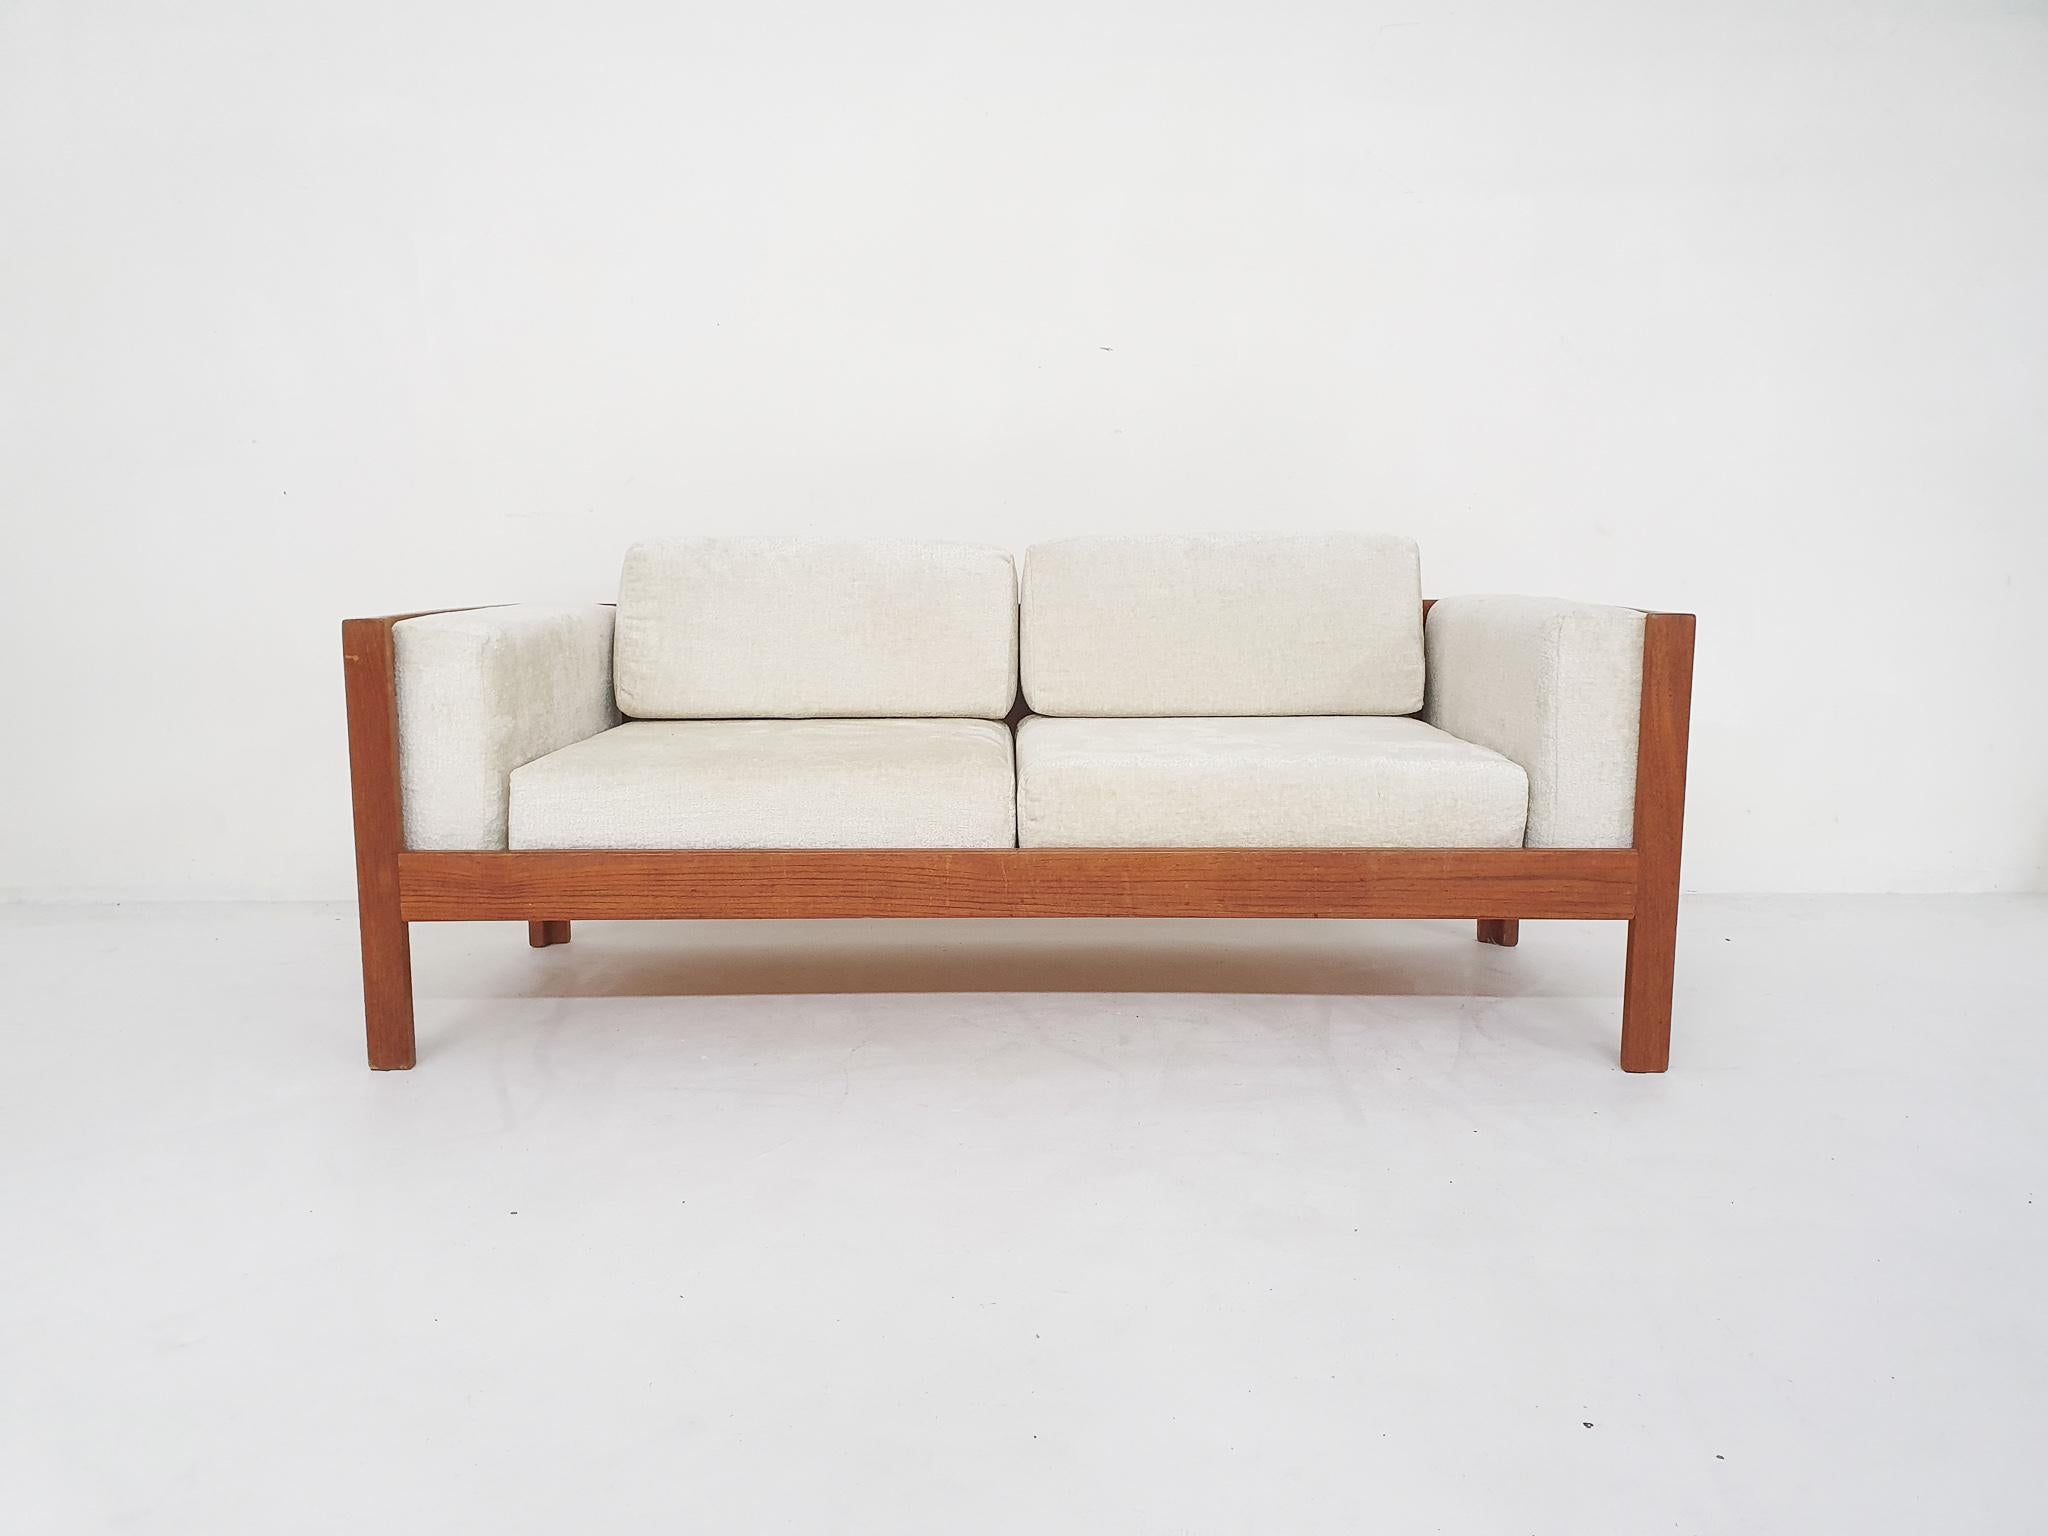 Zweisitzer-Sofa aus Teakholz mit losen Kissen, die mit einem cremefarbenen Boucle-Stoff neu bezogen sind.
